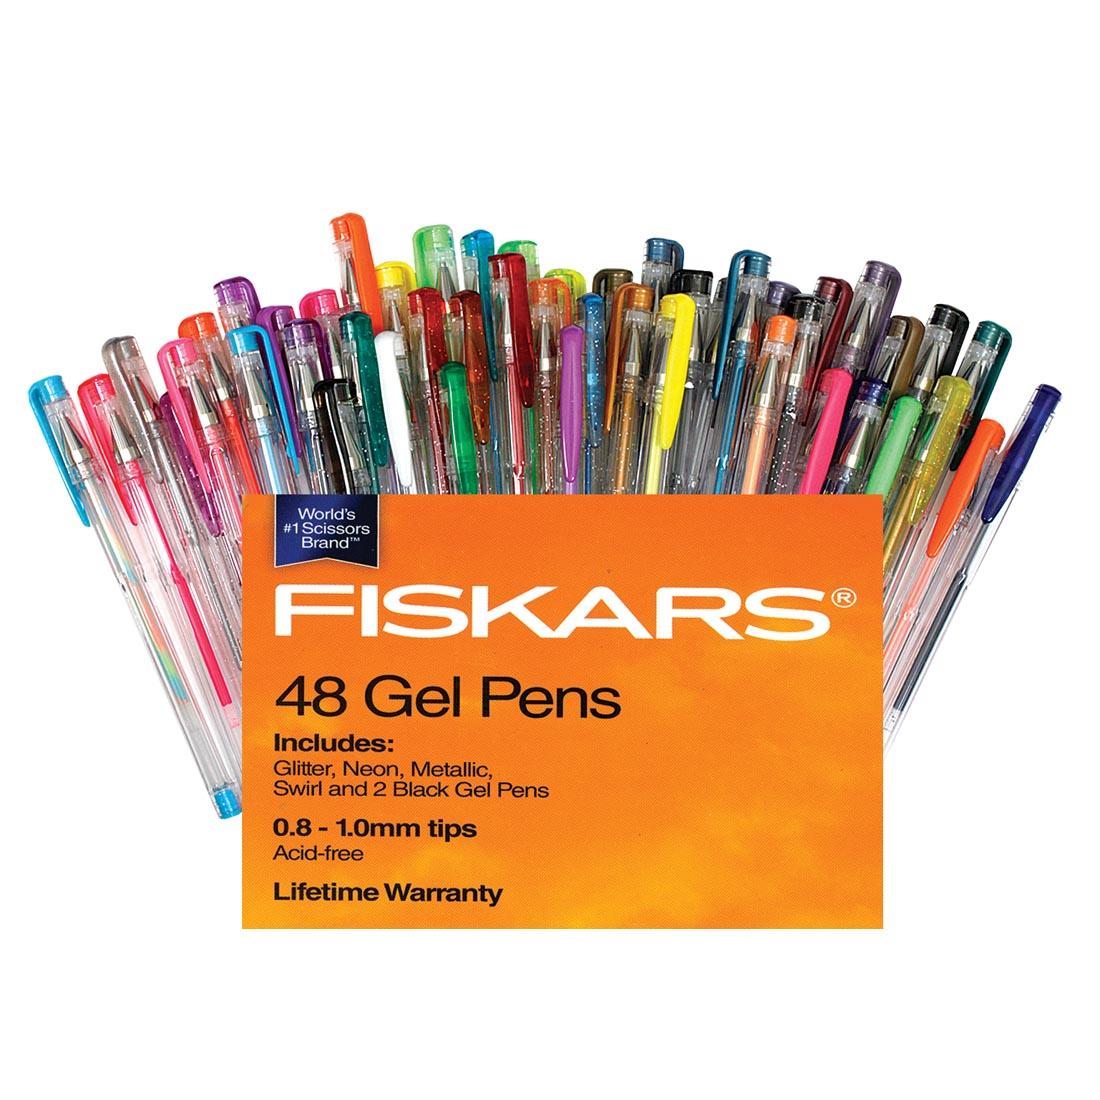 Fiskars Gel Pen Value Set